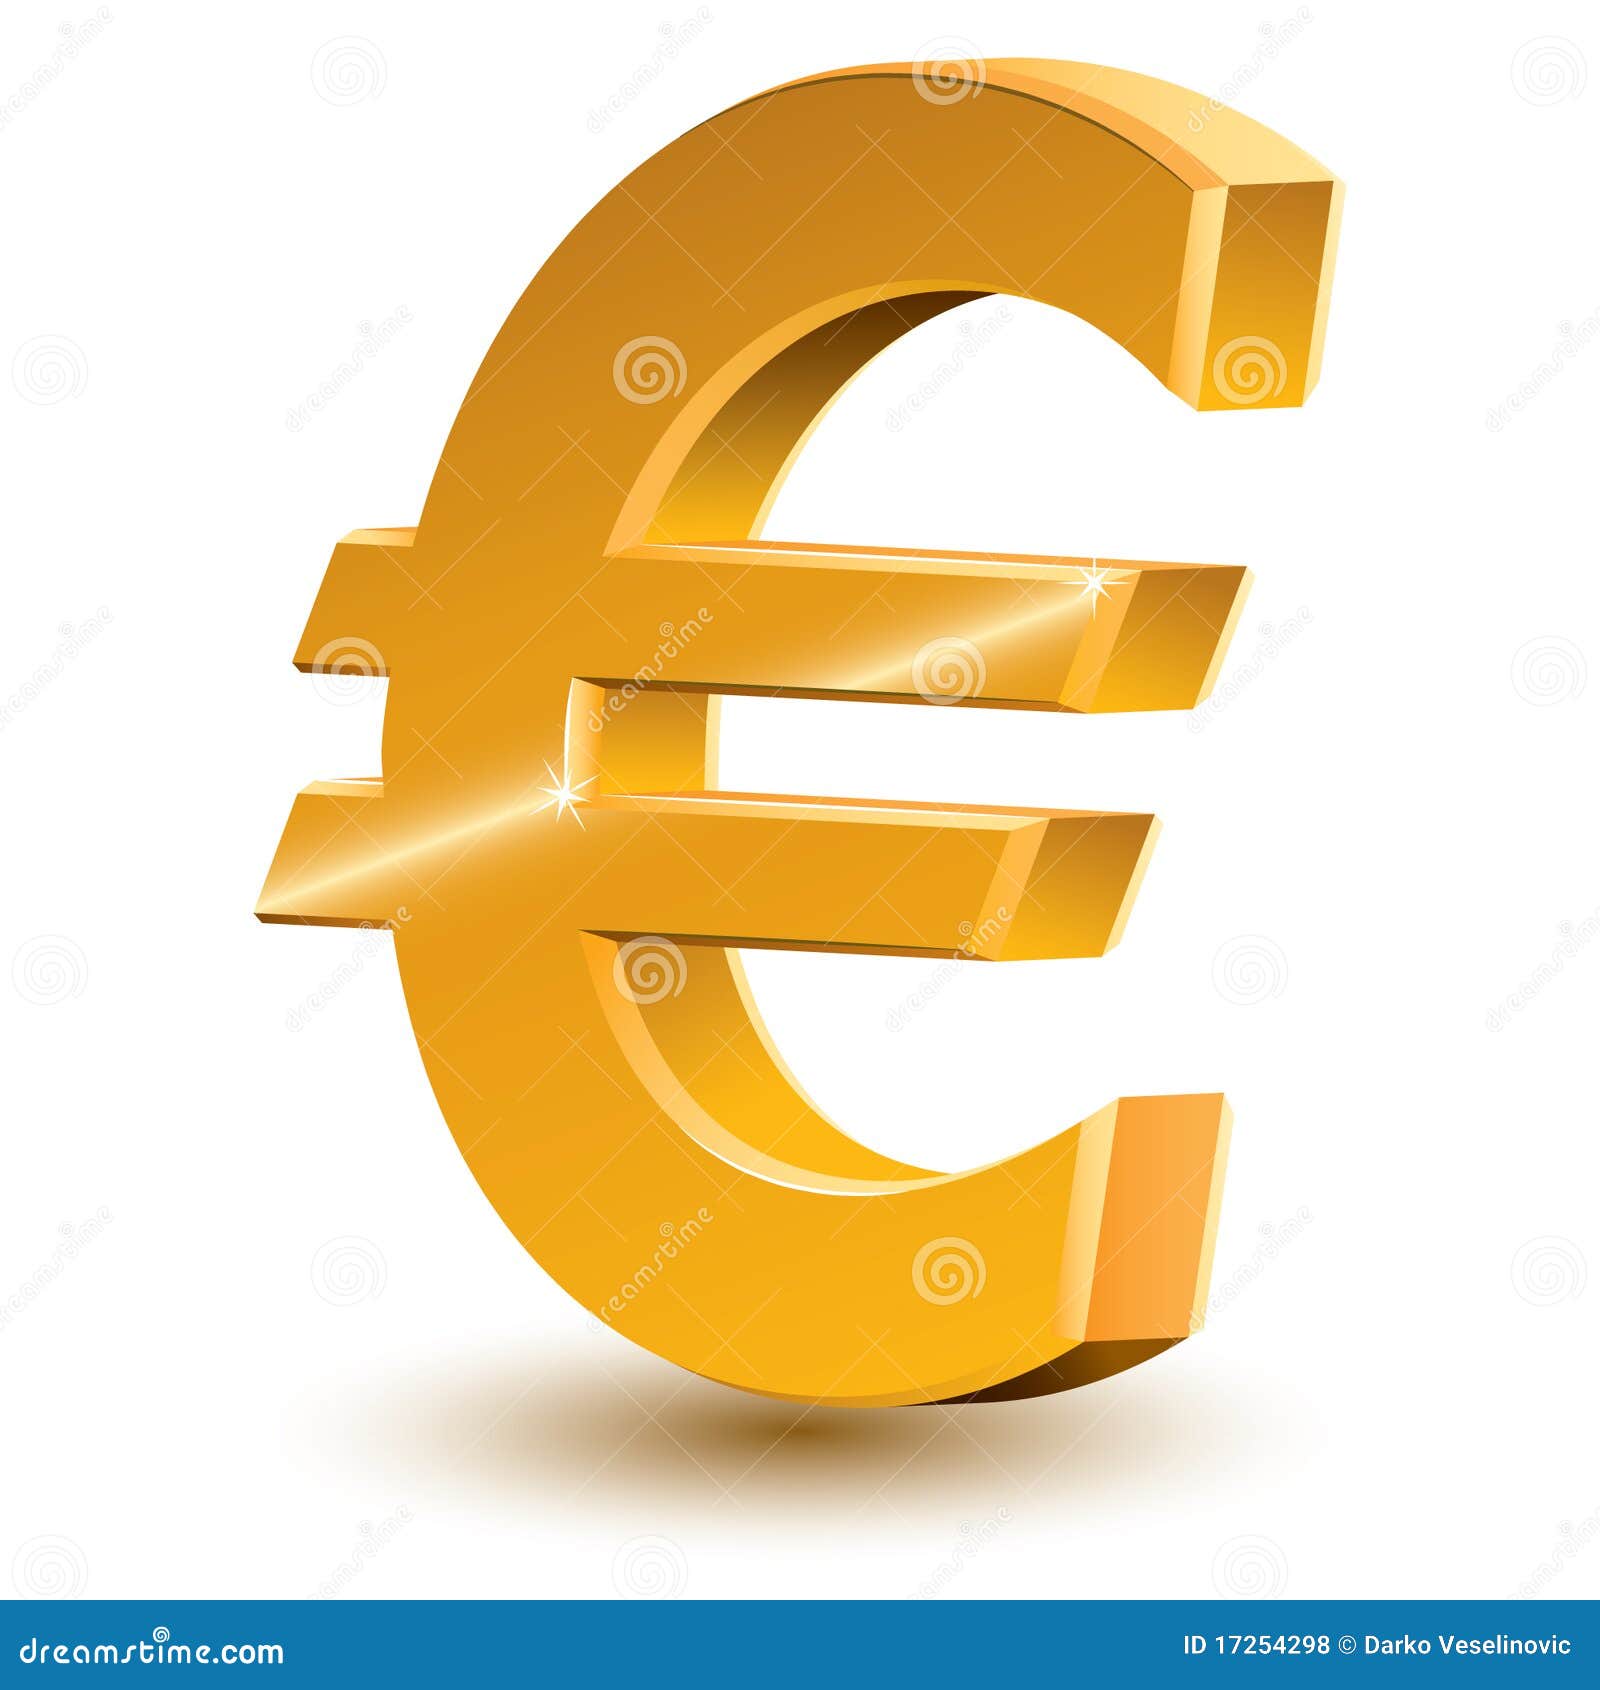 euro zeichen clipart - photo #5